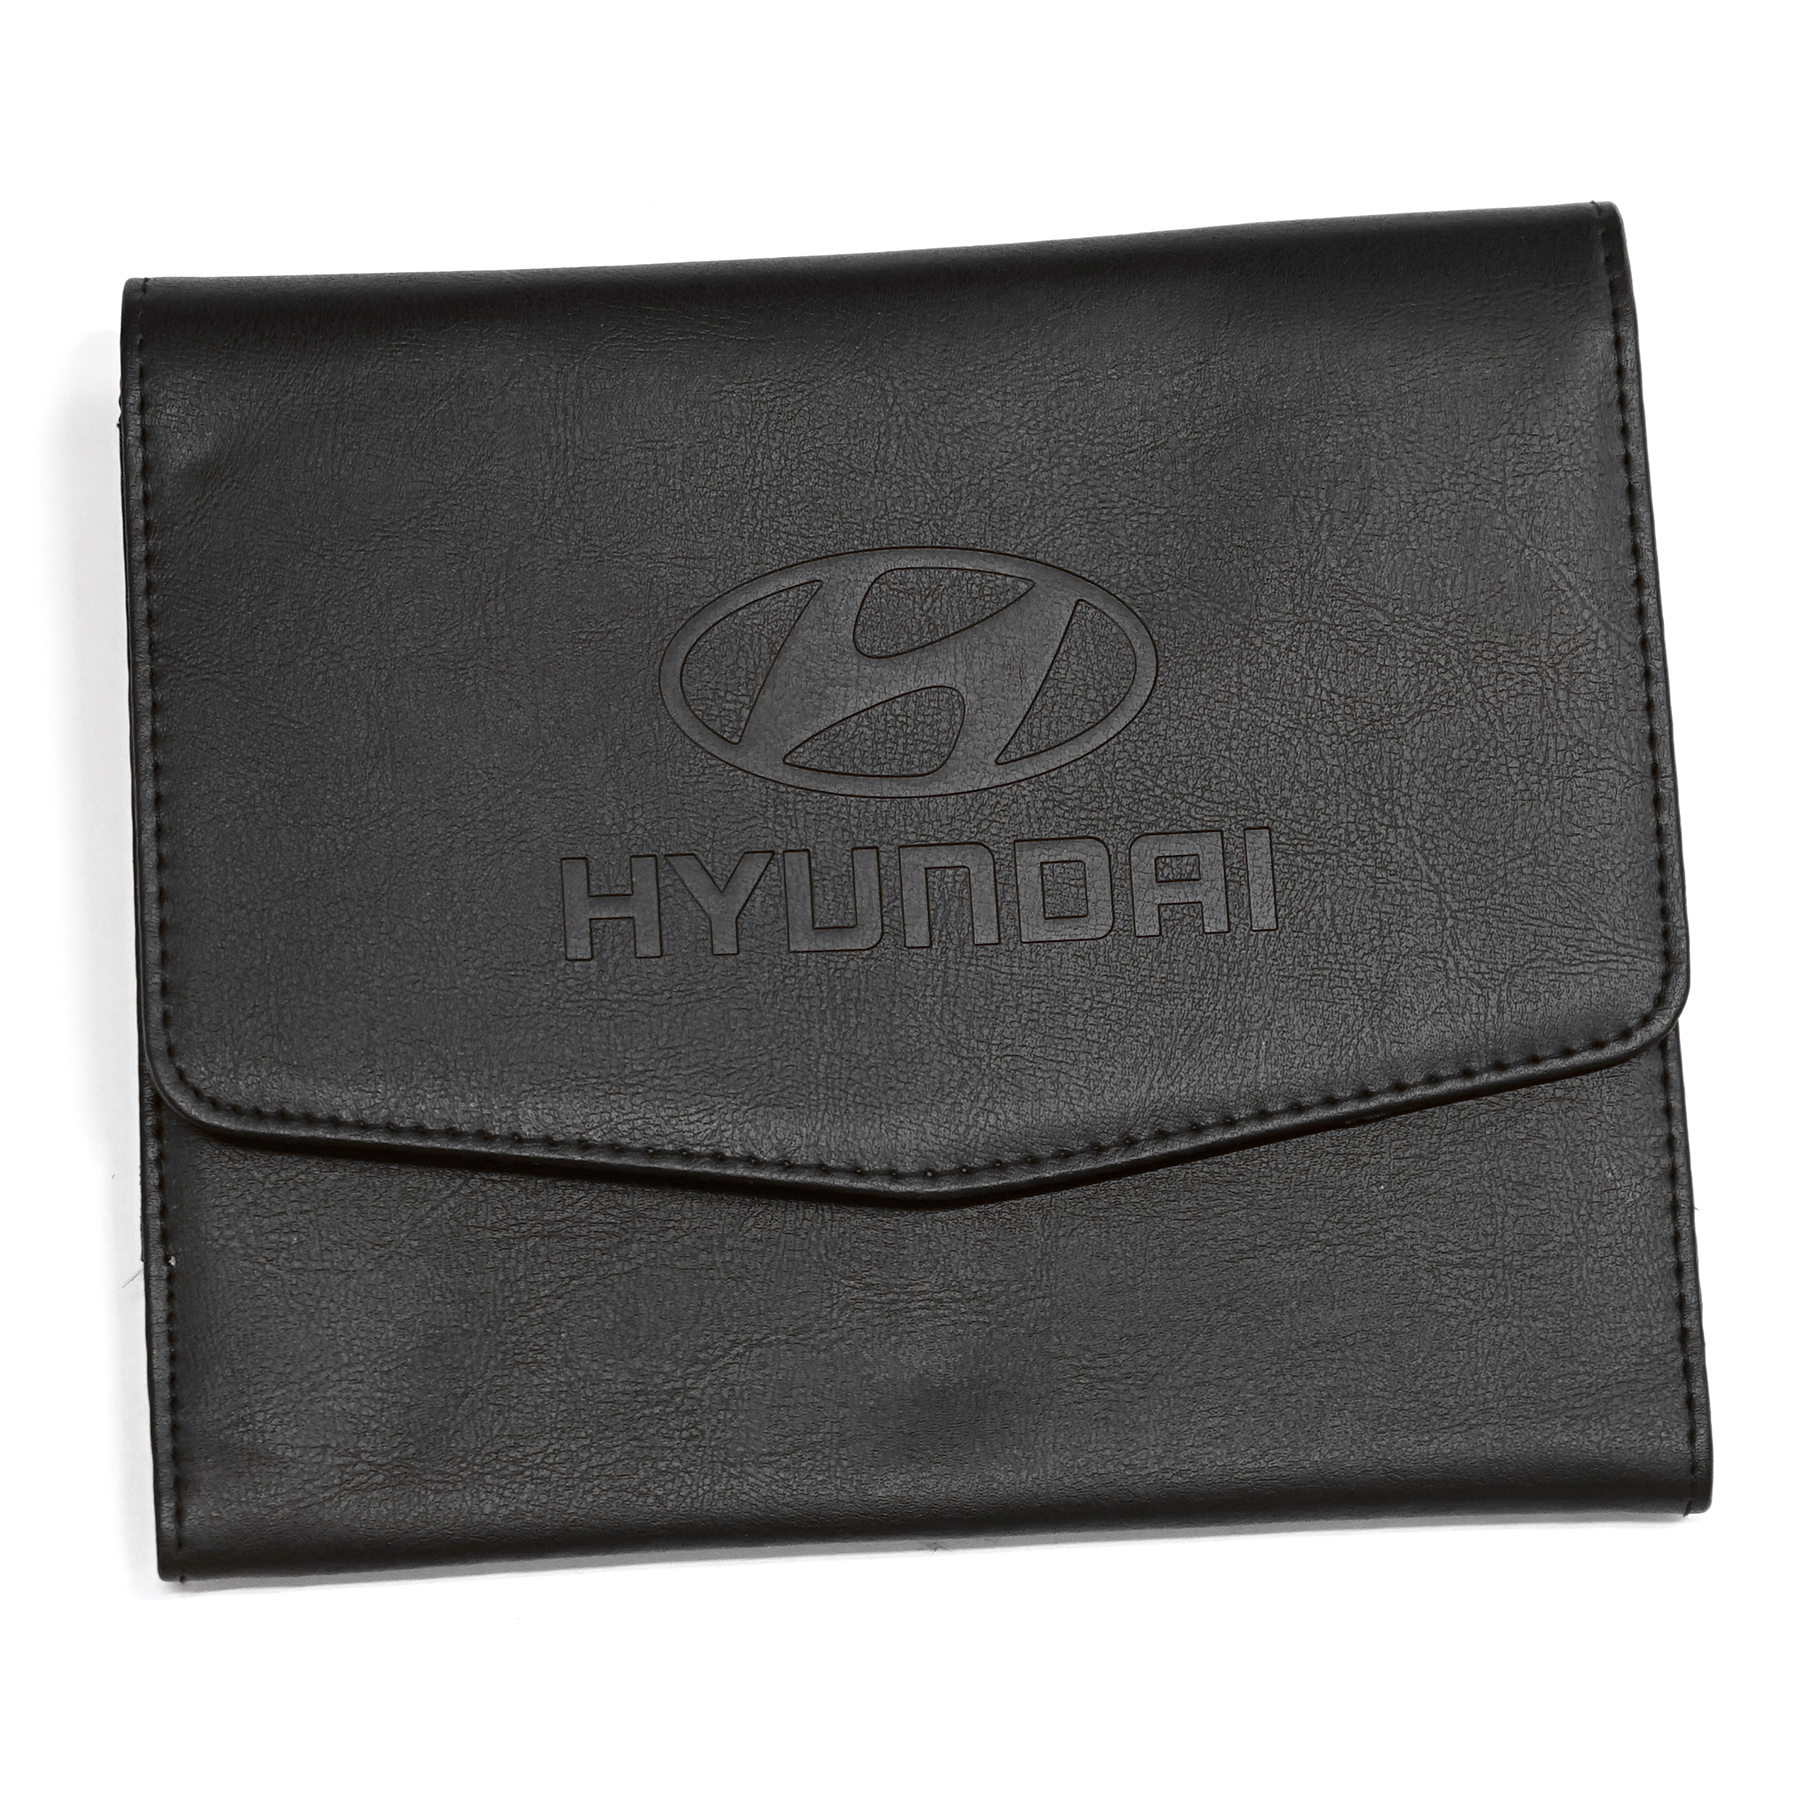 Original Hyundai Bordmappe Bordbuch Tasche Hülle Case schwarz